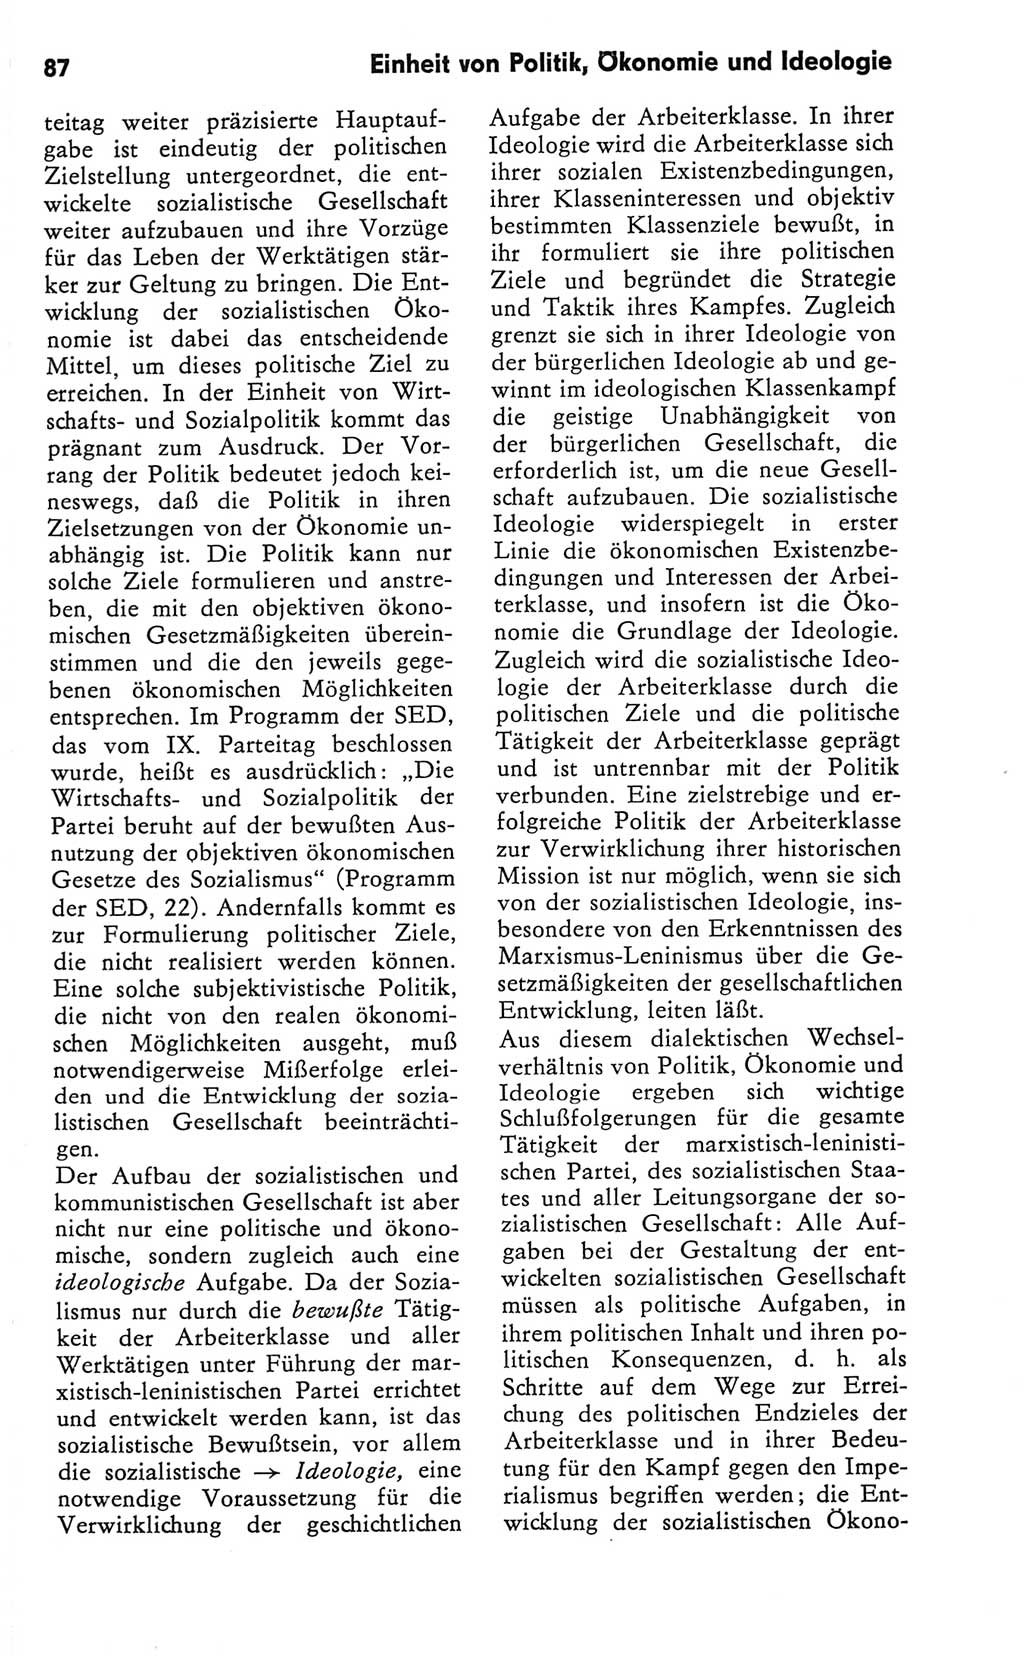 Kleines Wörterbuch der marxistisch-leninistischen Philosophie [Deutsche Demokratische Republik (DDR)] 1981, Seite 87 (Kl. Wb. ML Phil. DDR 1981, S. 87)